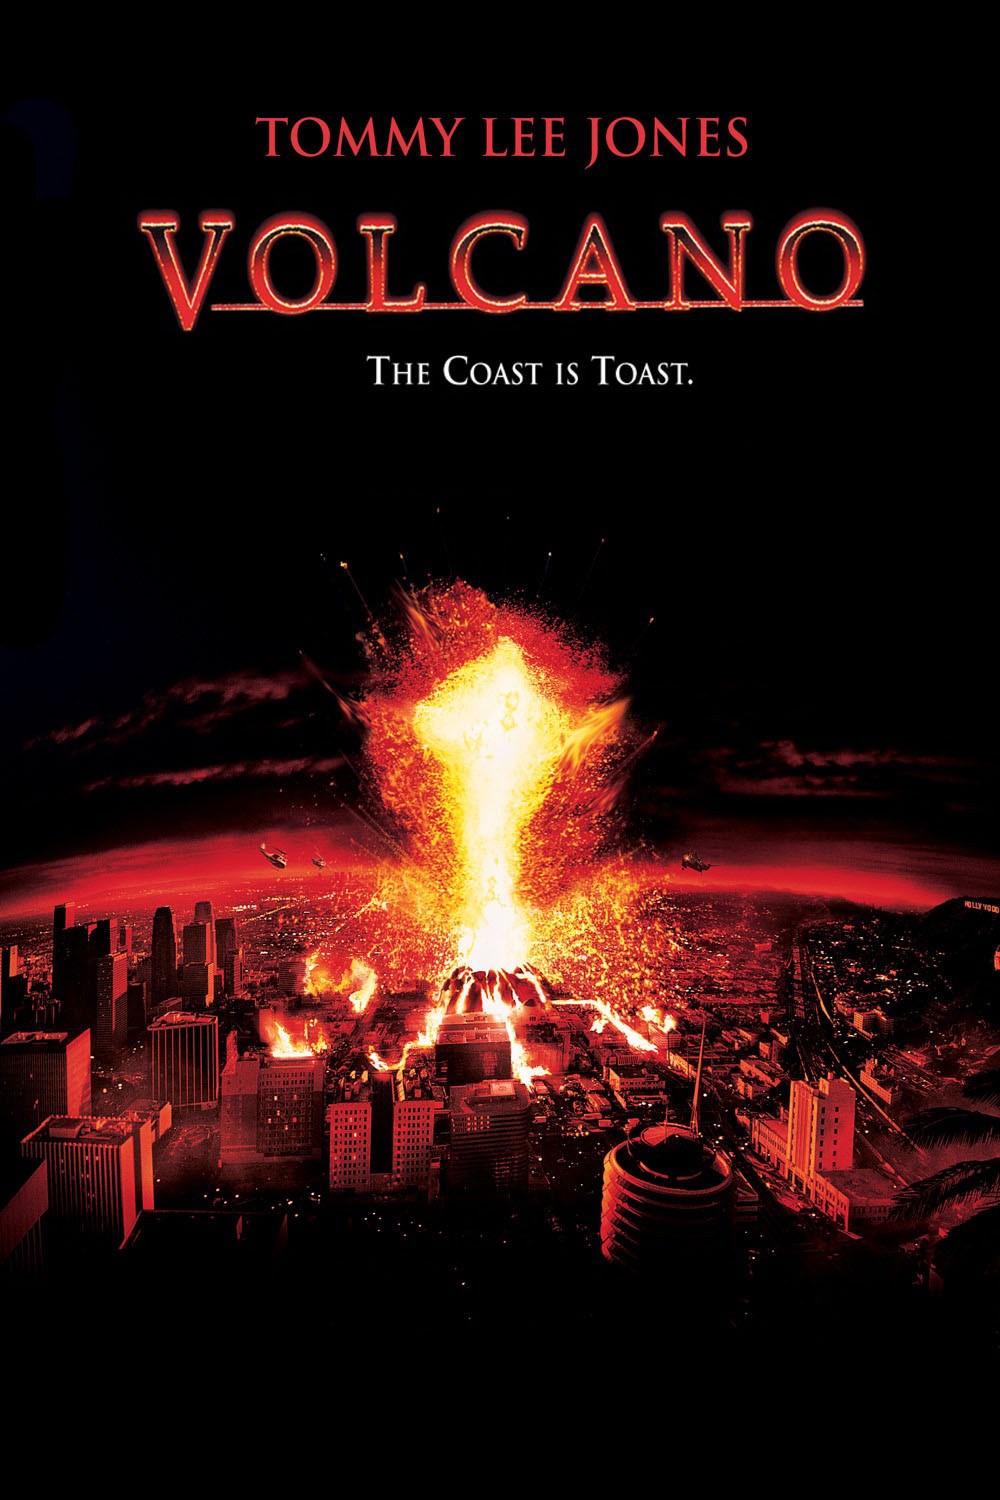 Volcano Film